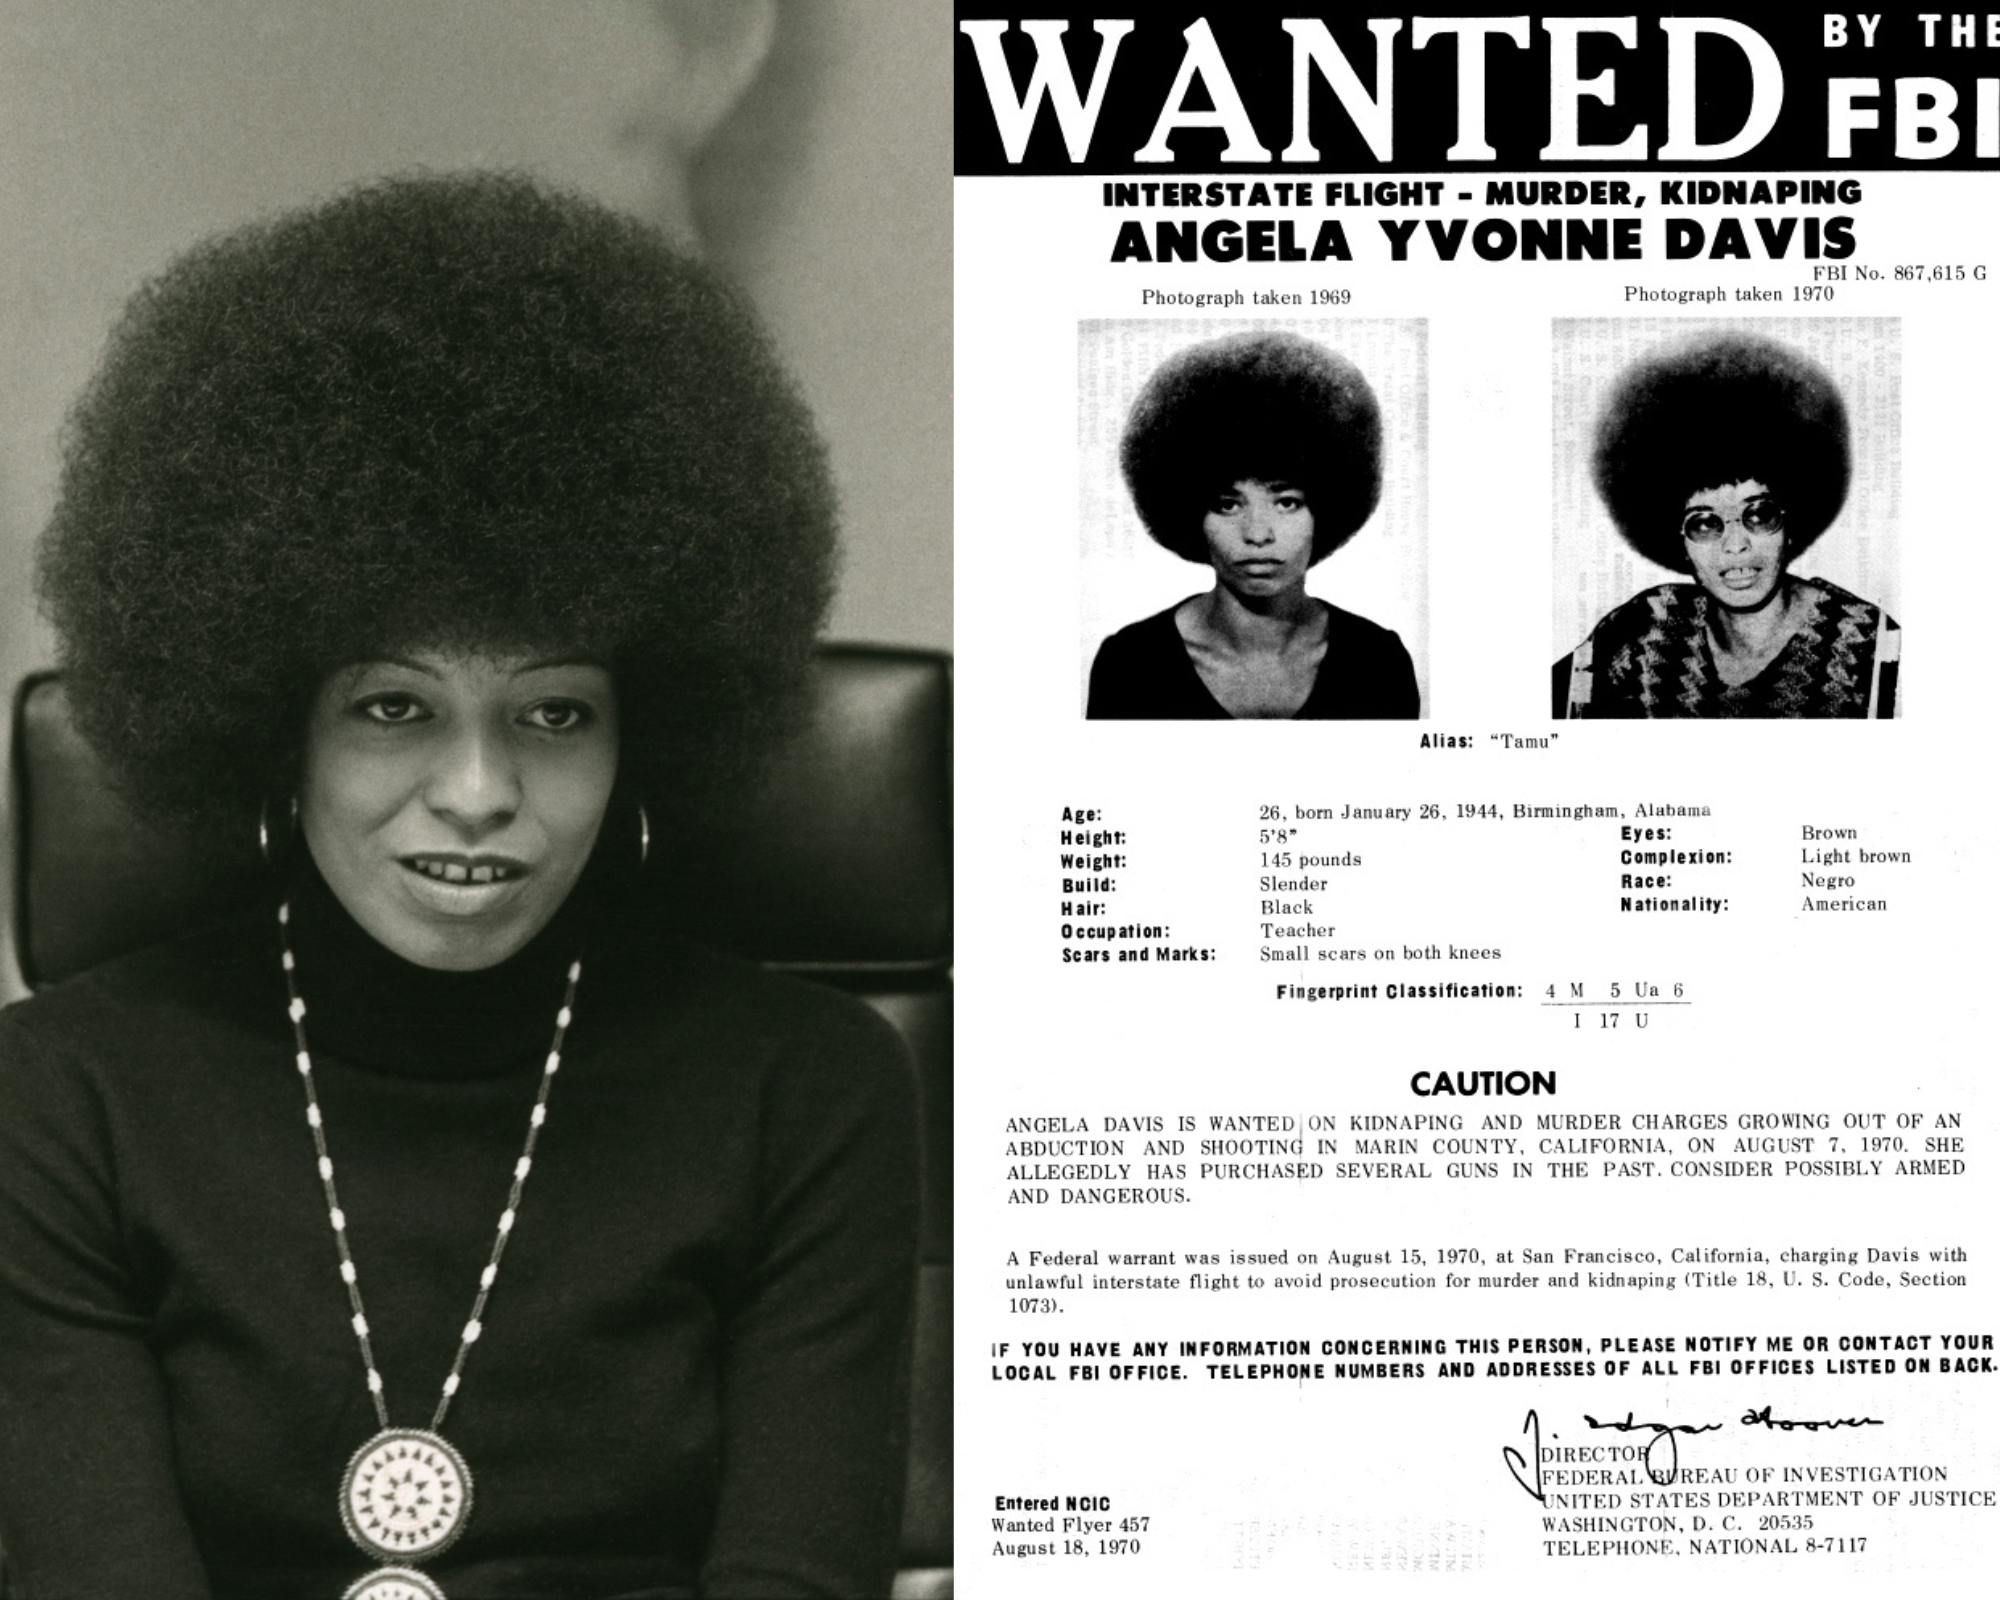 تصویری از جوانی آنجلا دیویس در کنار پوستر پلیس فدرال آمریکا که او را تحت‌ تعقیب معرفی می‌کرد و خواستار هر اطلاعاتی بود که به دستگیری او منجر شود. این پوستر در جنبش آزادی دیویس به‌عنوان یک زندانی سیاسی نقش موثری بازی کرد و نماد این جنبش شد.